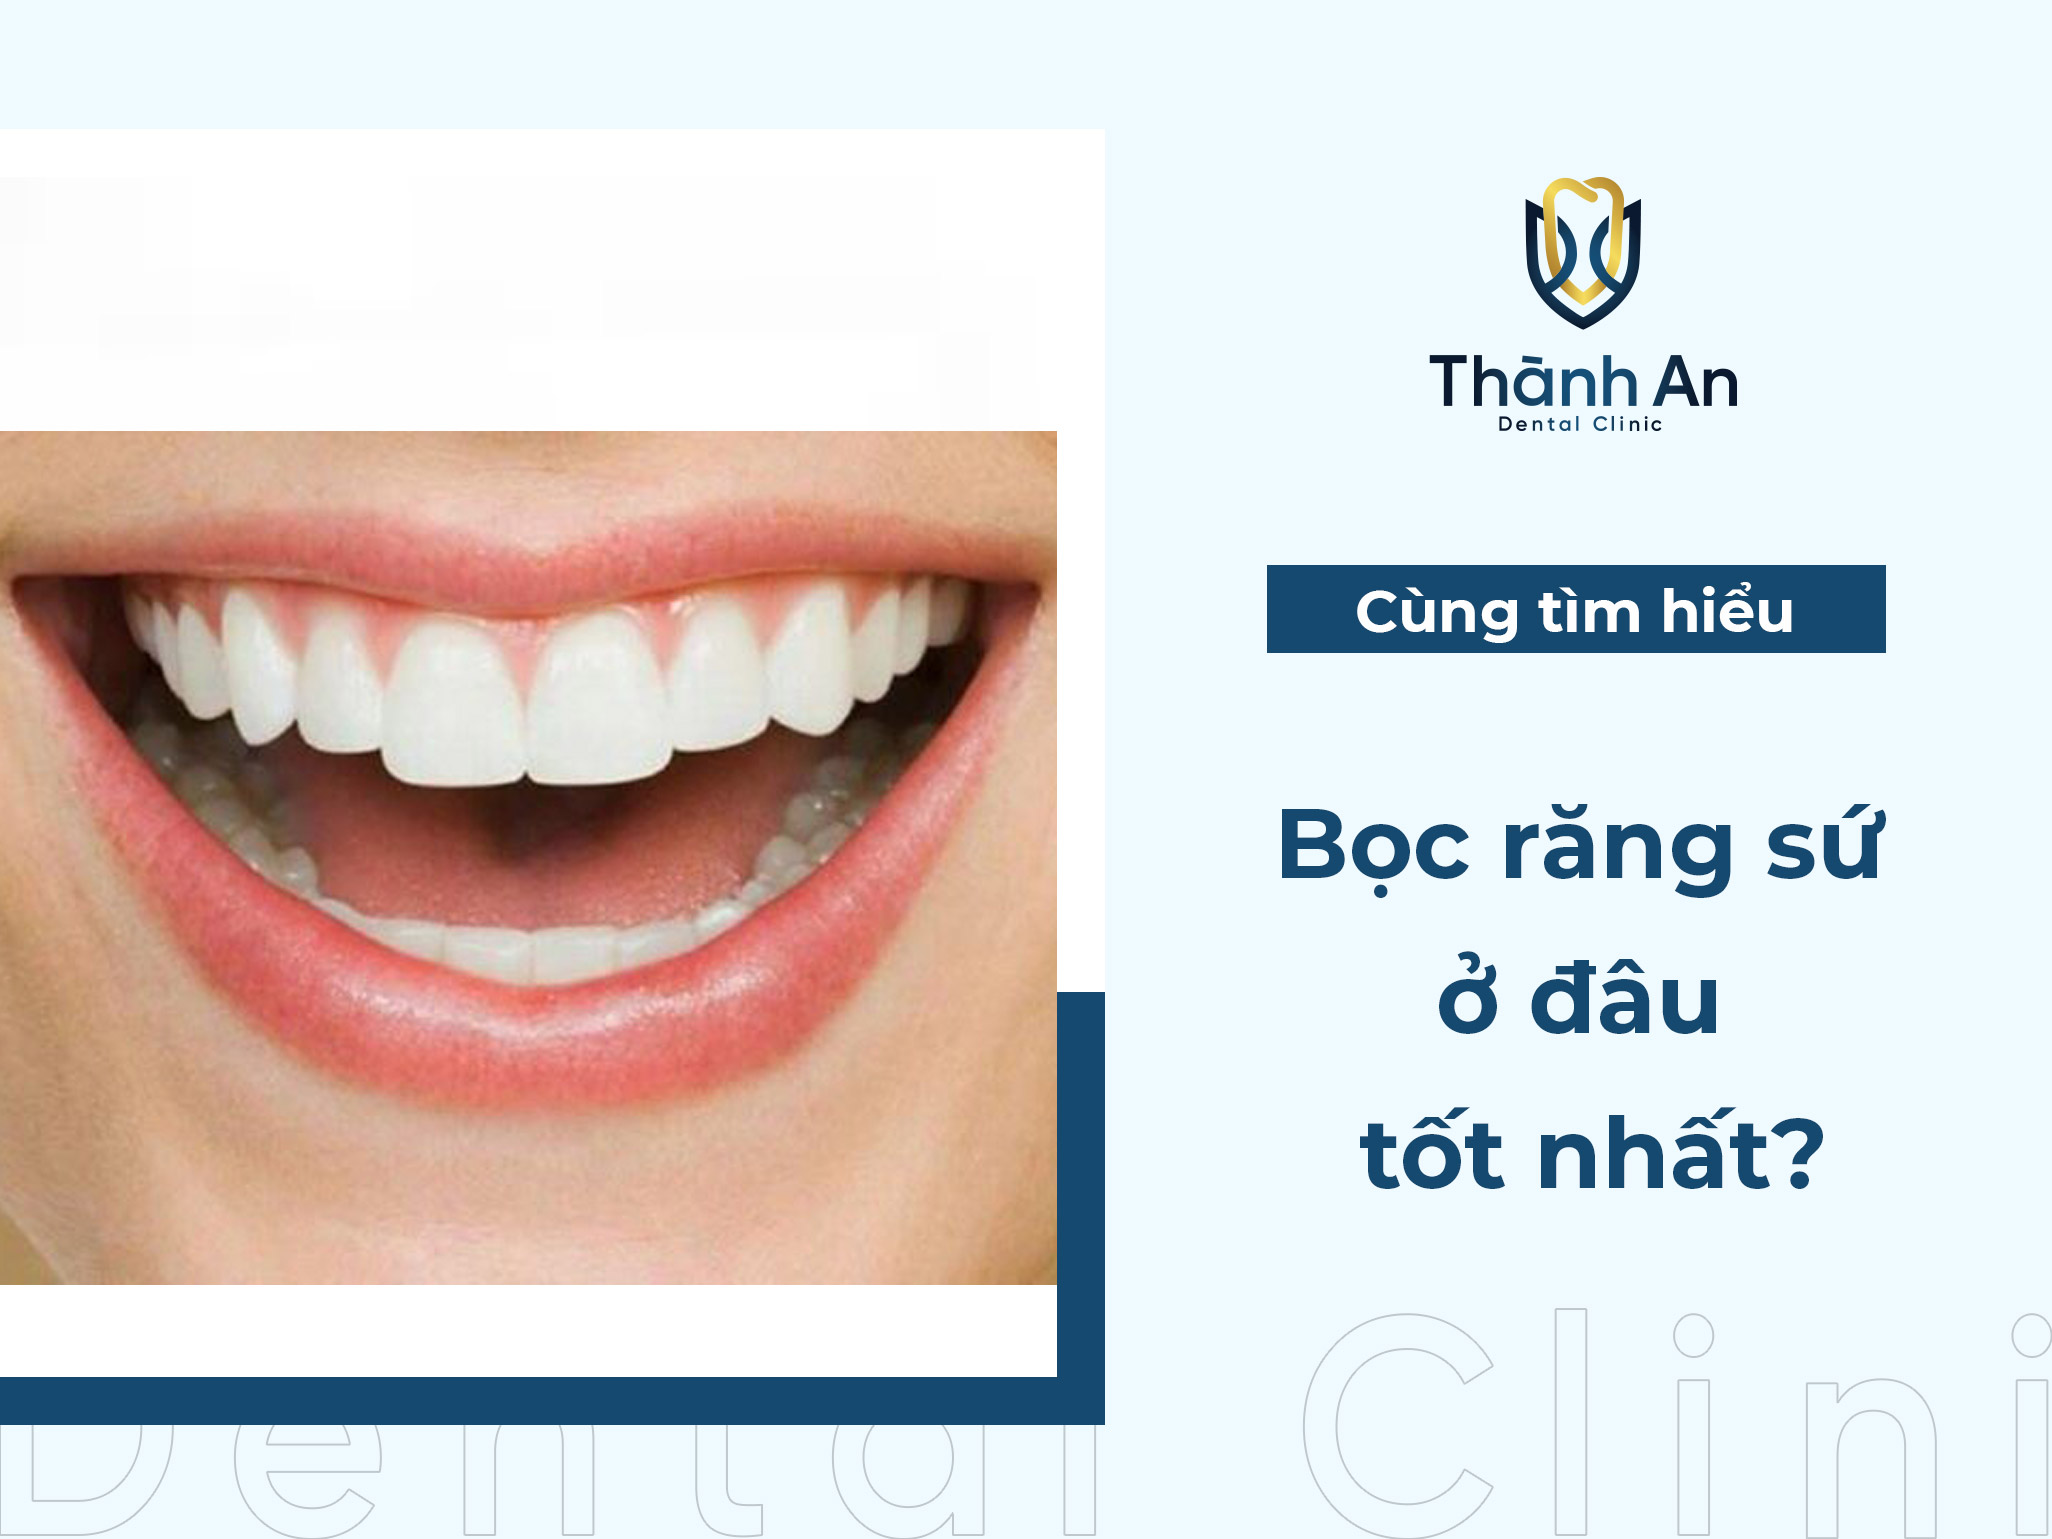 Bọc răng sứ ở đâu tốt nhất? Top 5+ Địa Chỉ Uy Tín tại Hà Nội